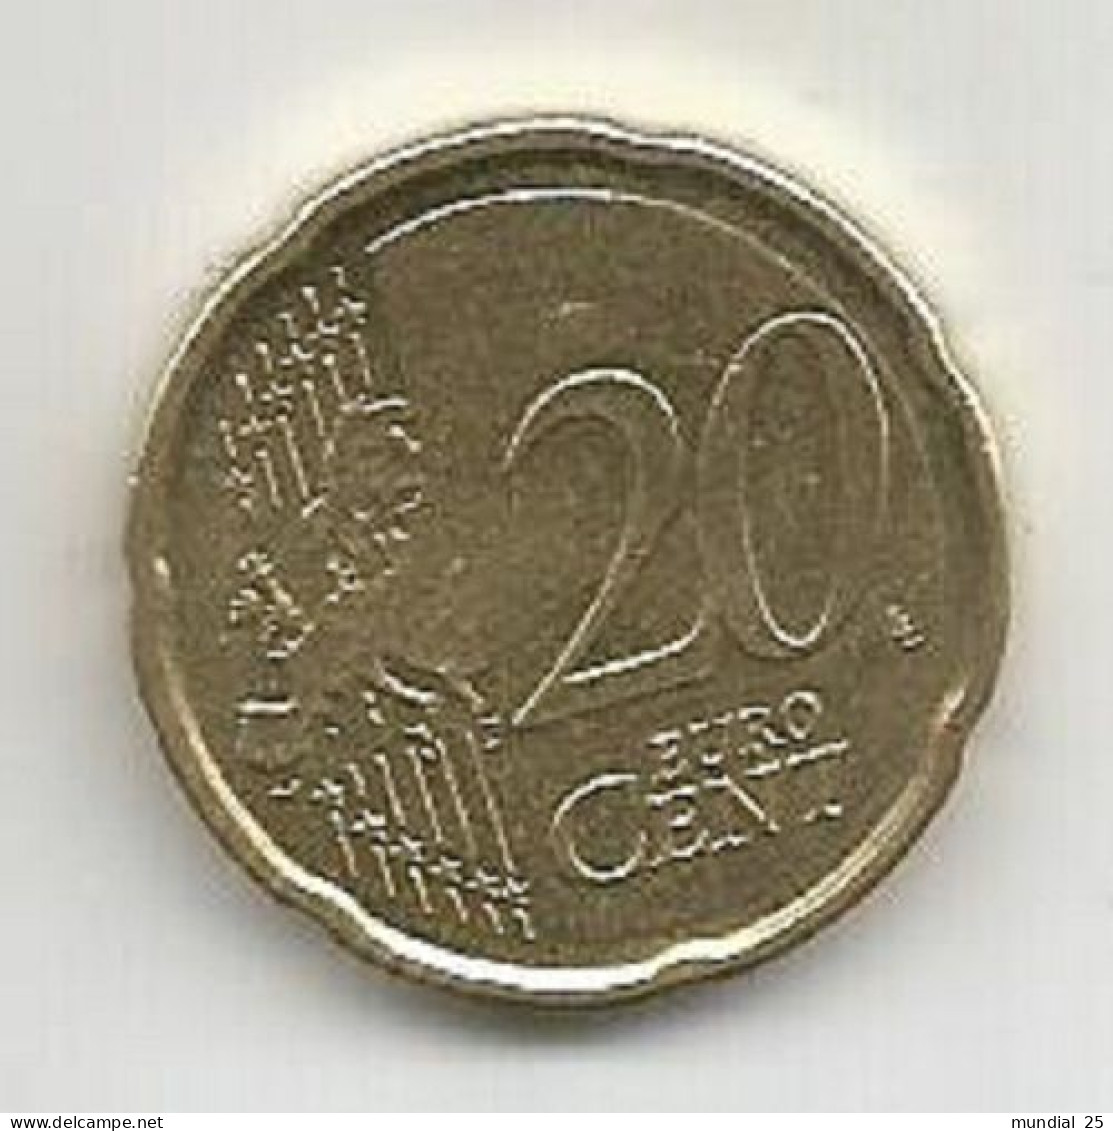 BELGIUM 20 EURO CENT 2011 - België